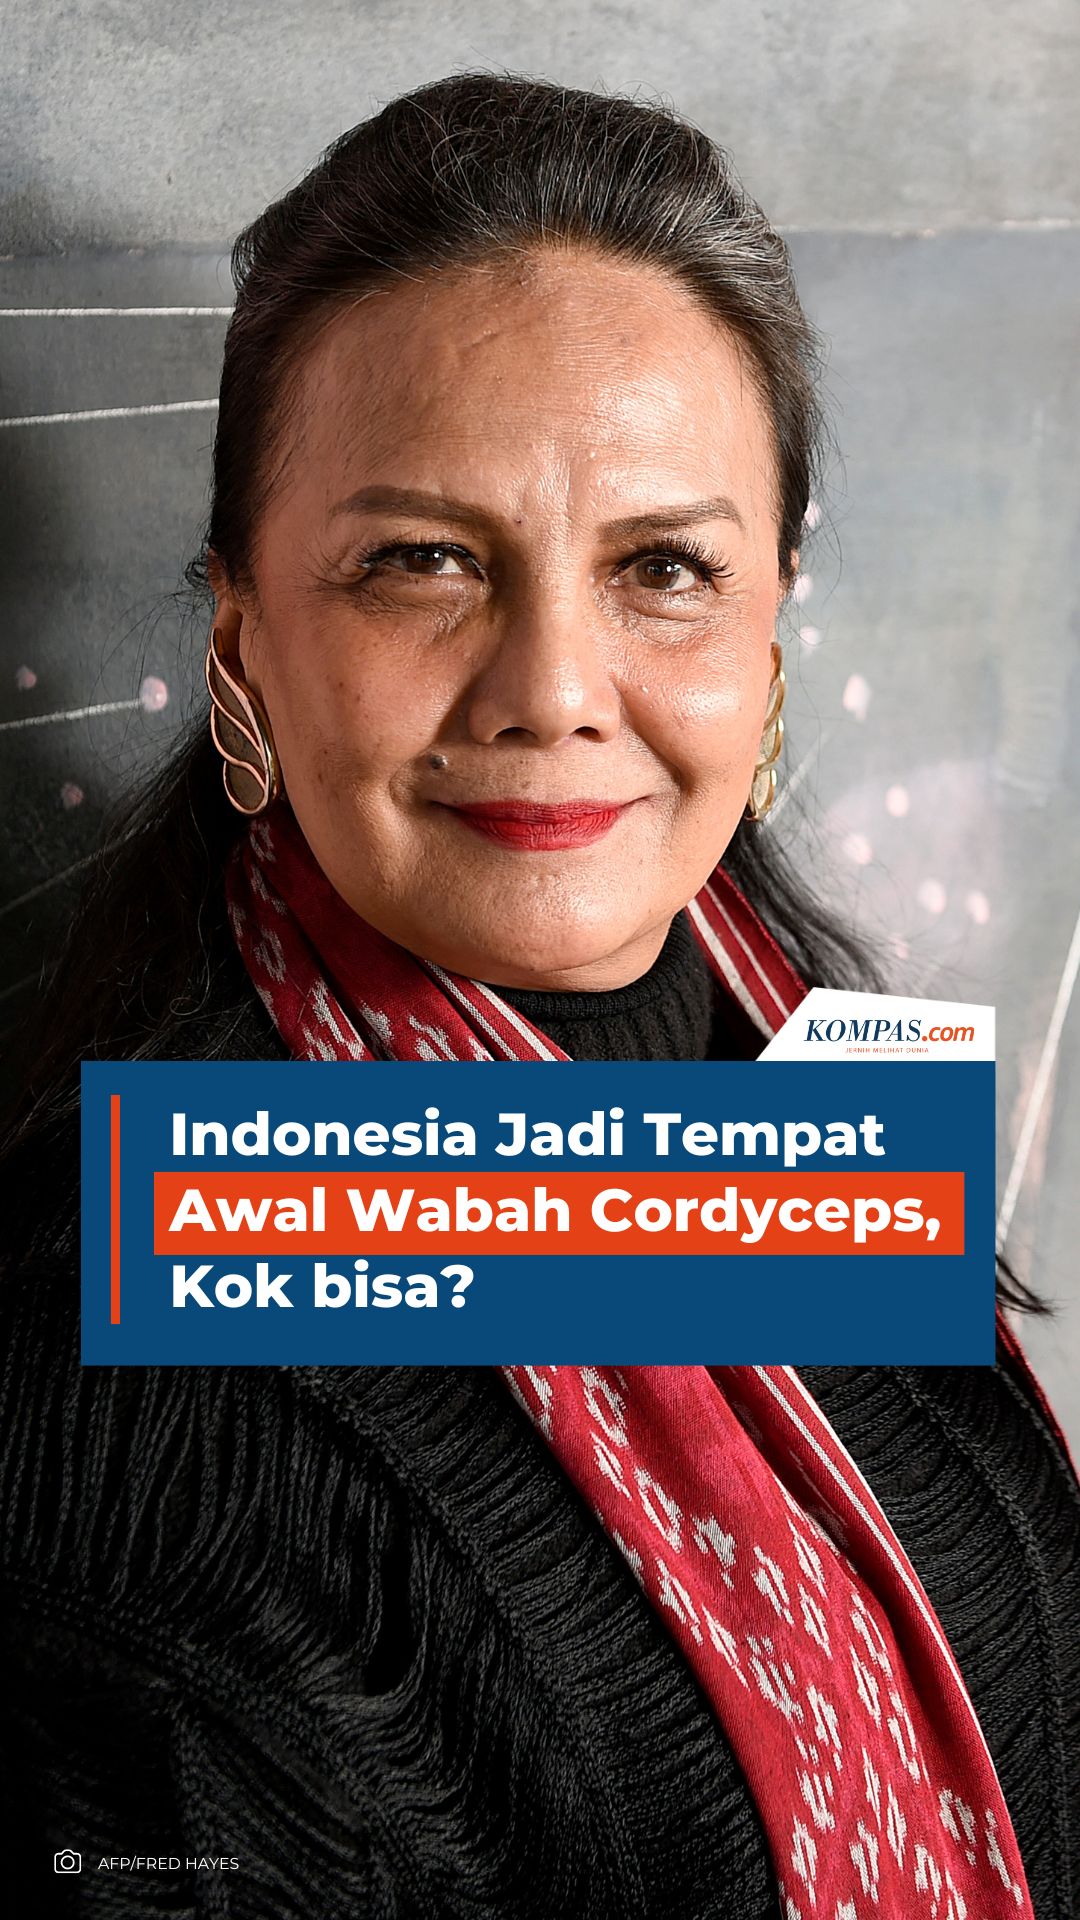 Indonesia Jadi Tempat Awal Wabah Cordyceps, Kok bisa?